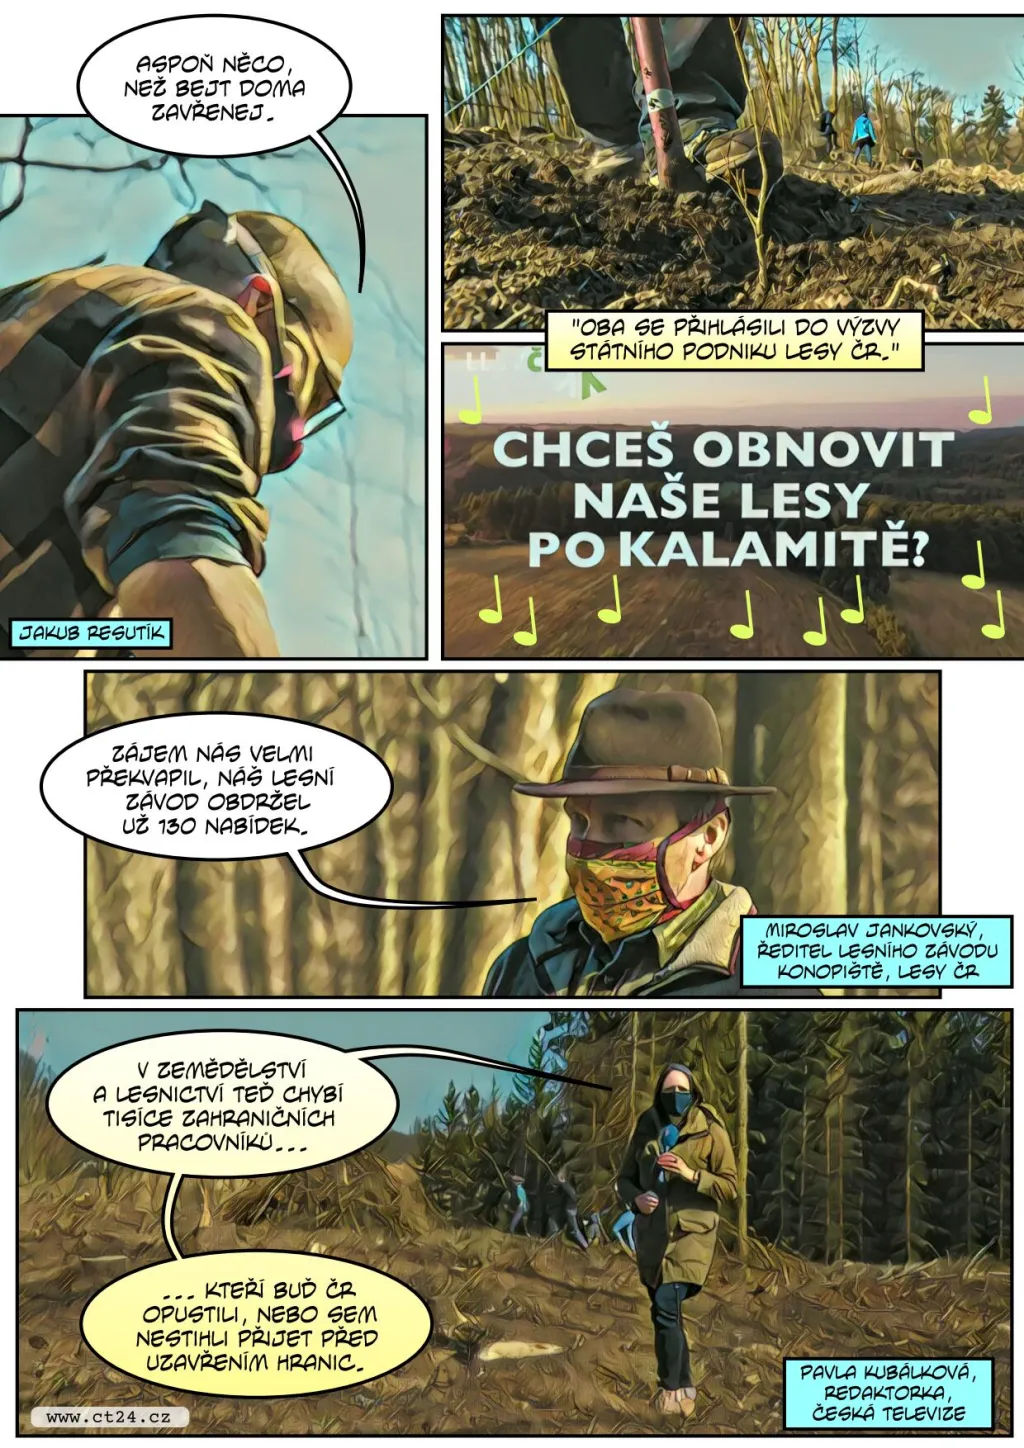 Výzva Lesů ČR